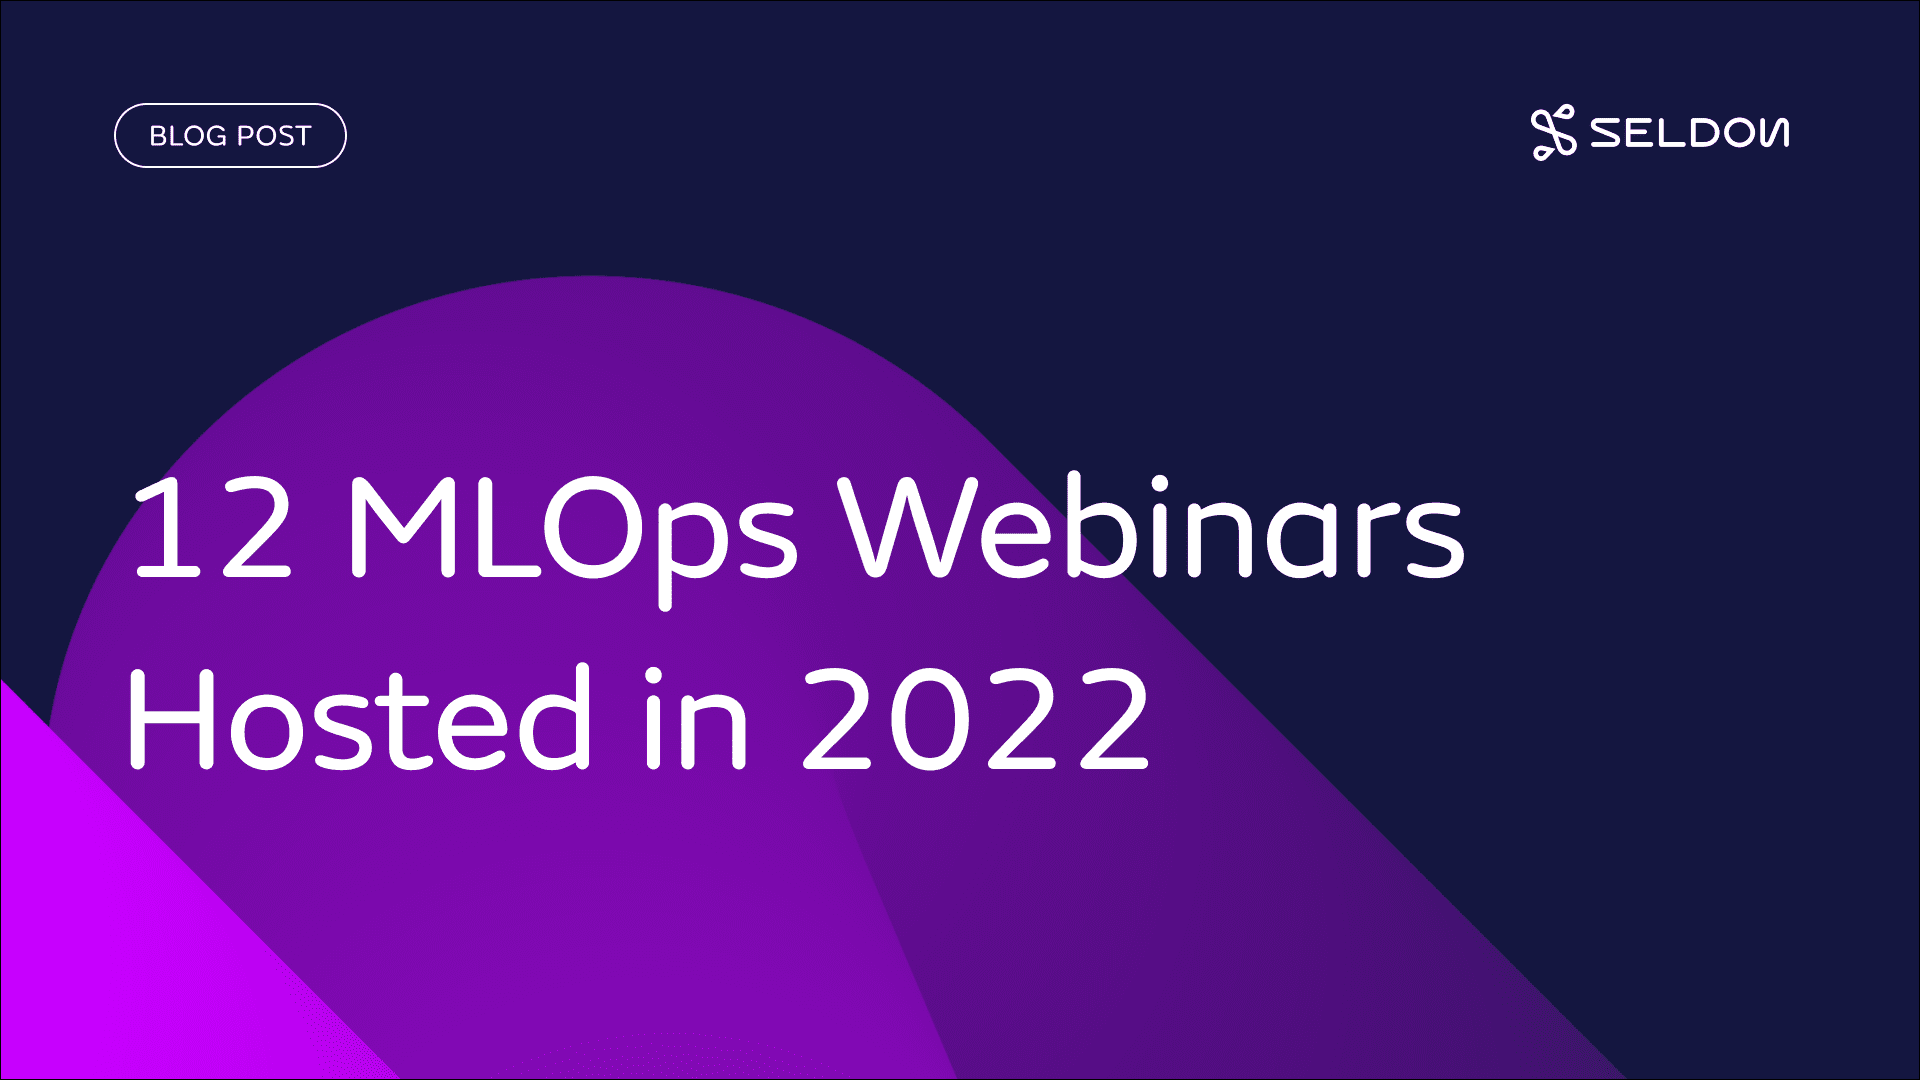 12 MLOps Webinars Hosted in 2022